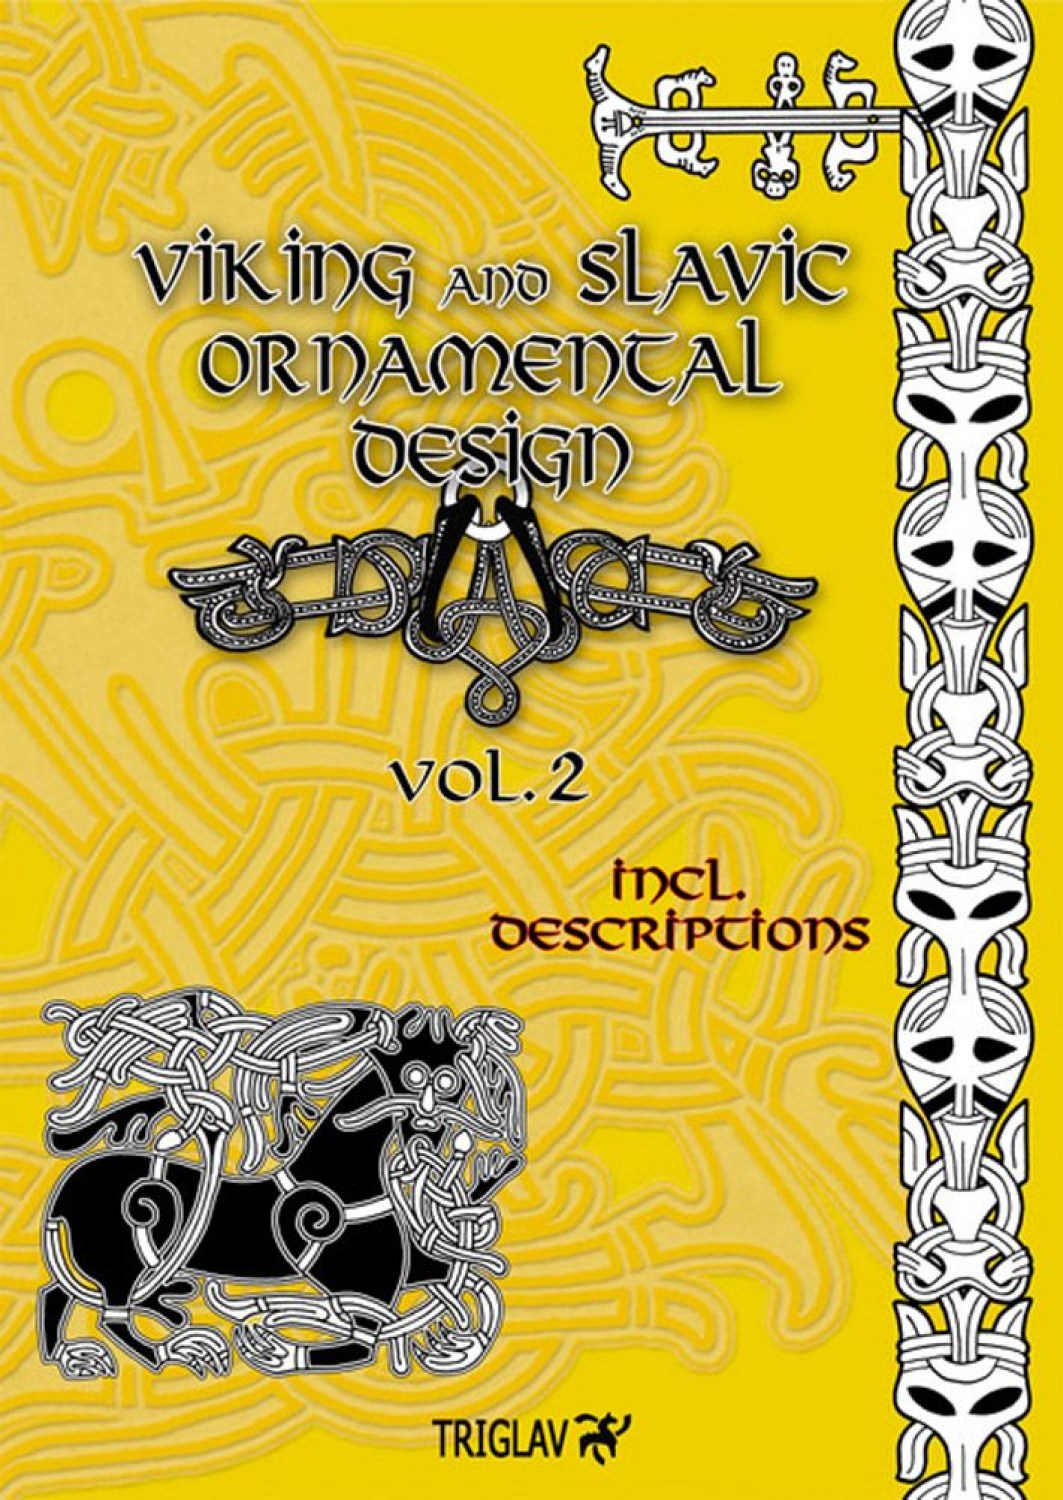 _viking_and_slav_4e1b3307cd1e1.min